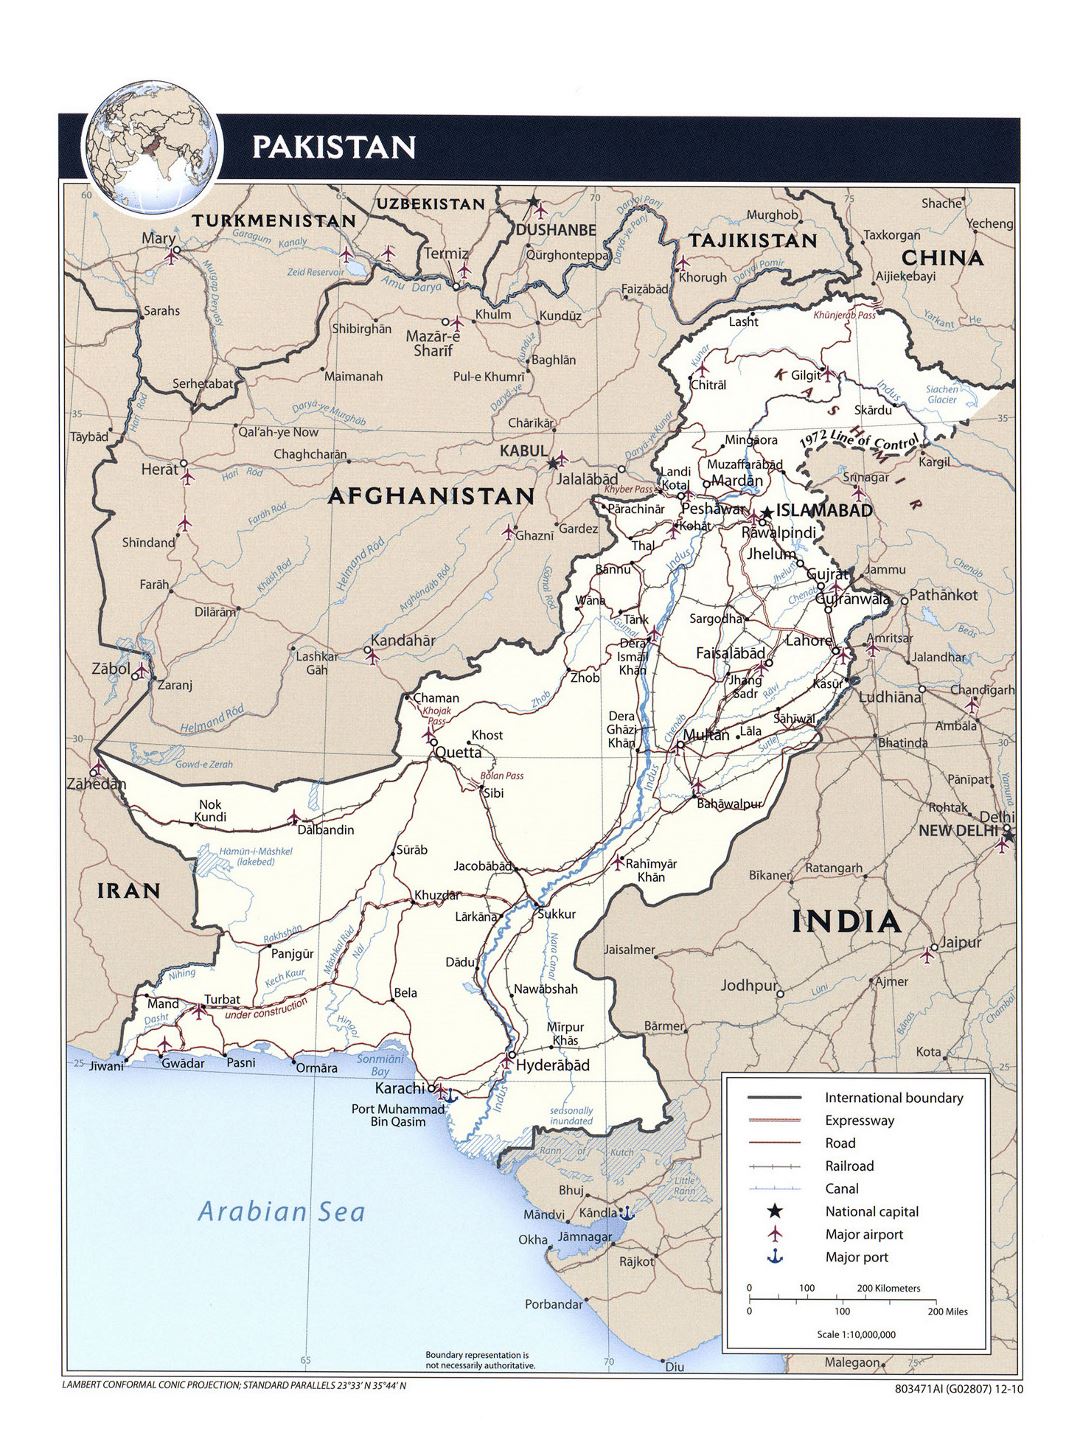 Детальная политическая карта Пакистана с дорогами, железными дорогами, крупными городами, аэропортами, портами и другими пометками - 2010